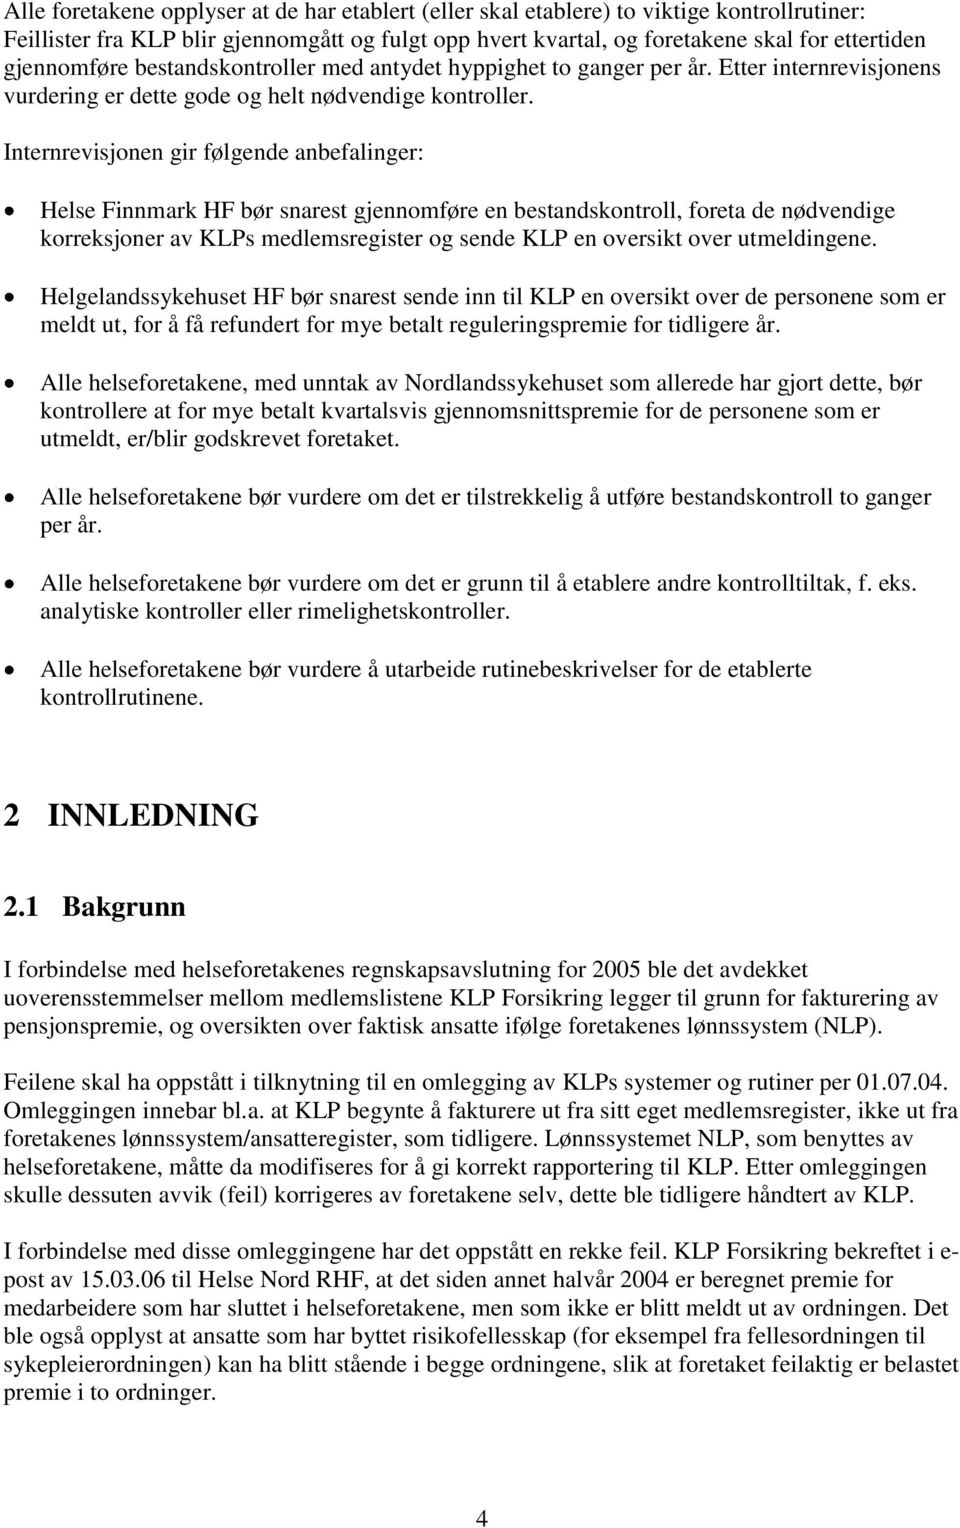 Internrevisjonen gir følgende anbefalinger: Helse Finnmark HF bør snarest gjennomføre en bestandskontroll, foreta de nødvendige korreksjoner av KLPs medlemsregister og sende KLP en oversikt over